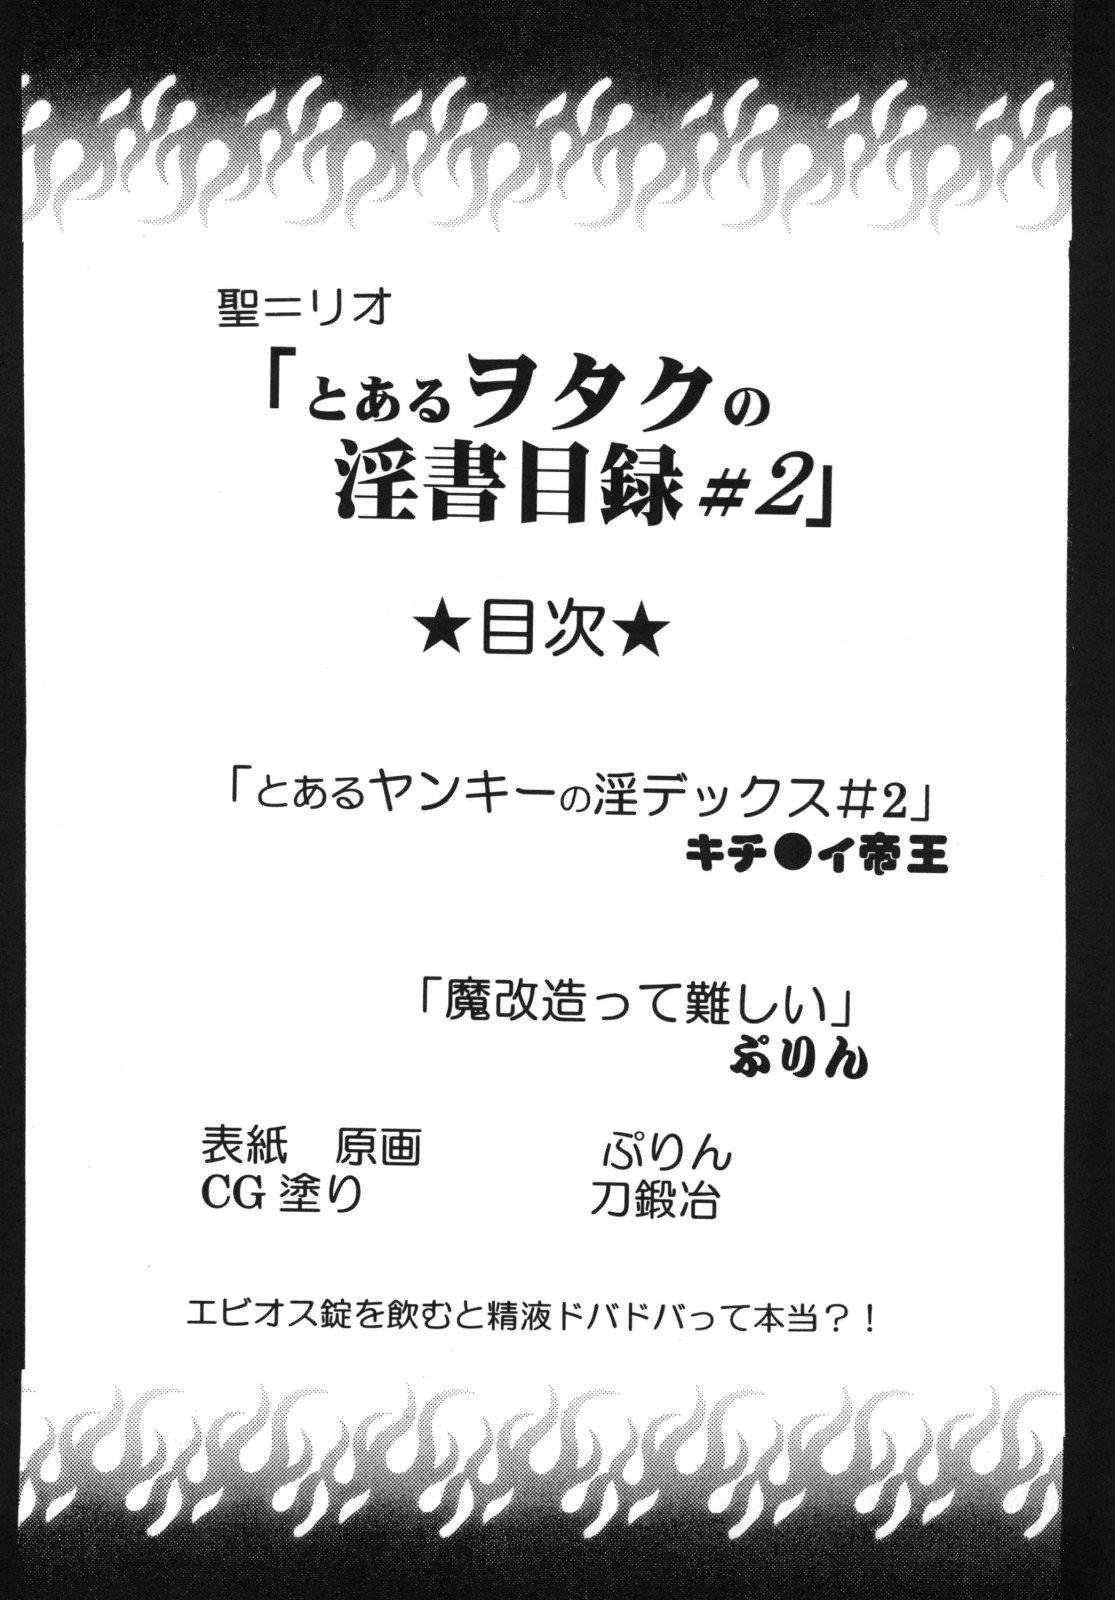 Boob Toaru Otaku no Index #2 - Toaru majutsu no index Bbc - Page 4